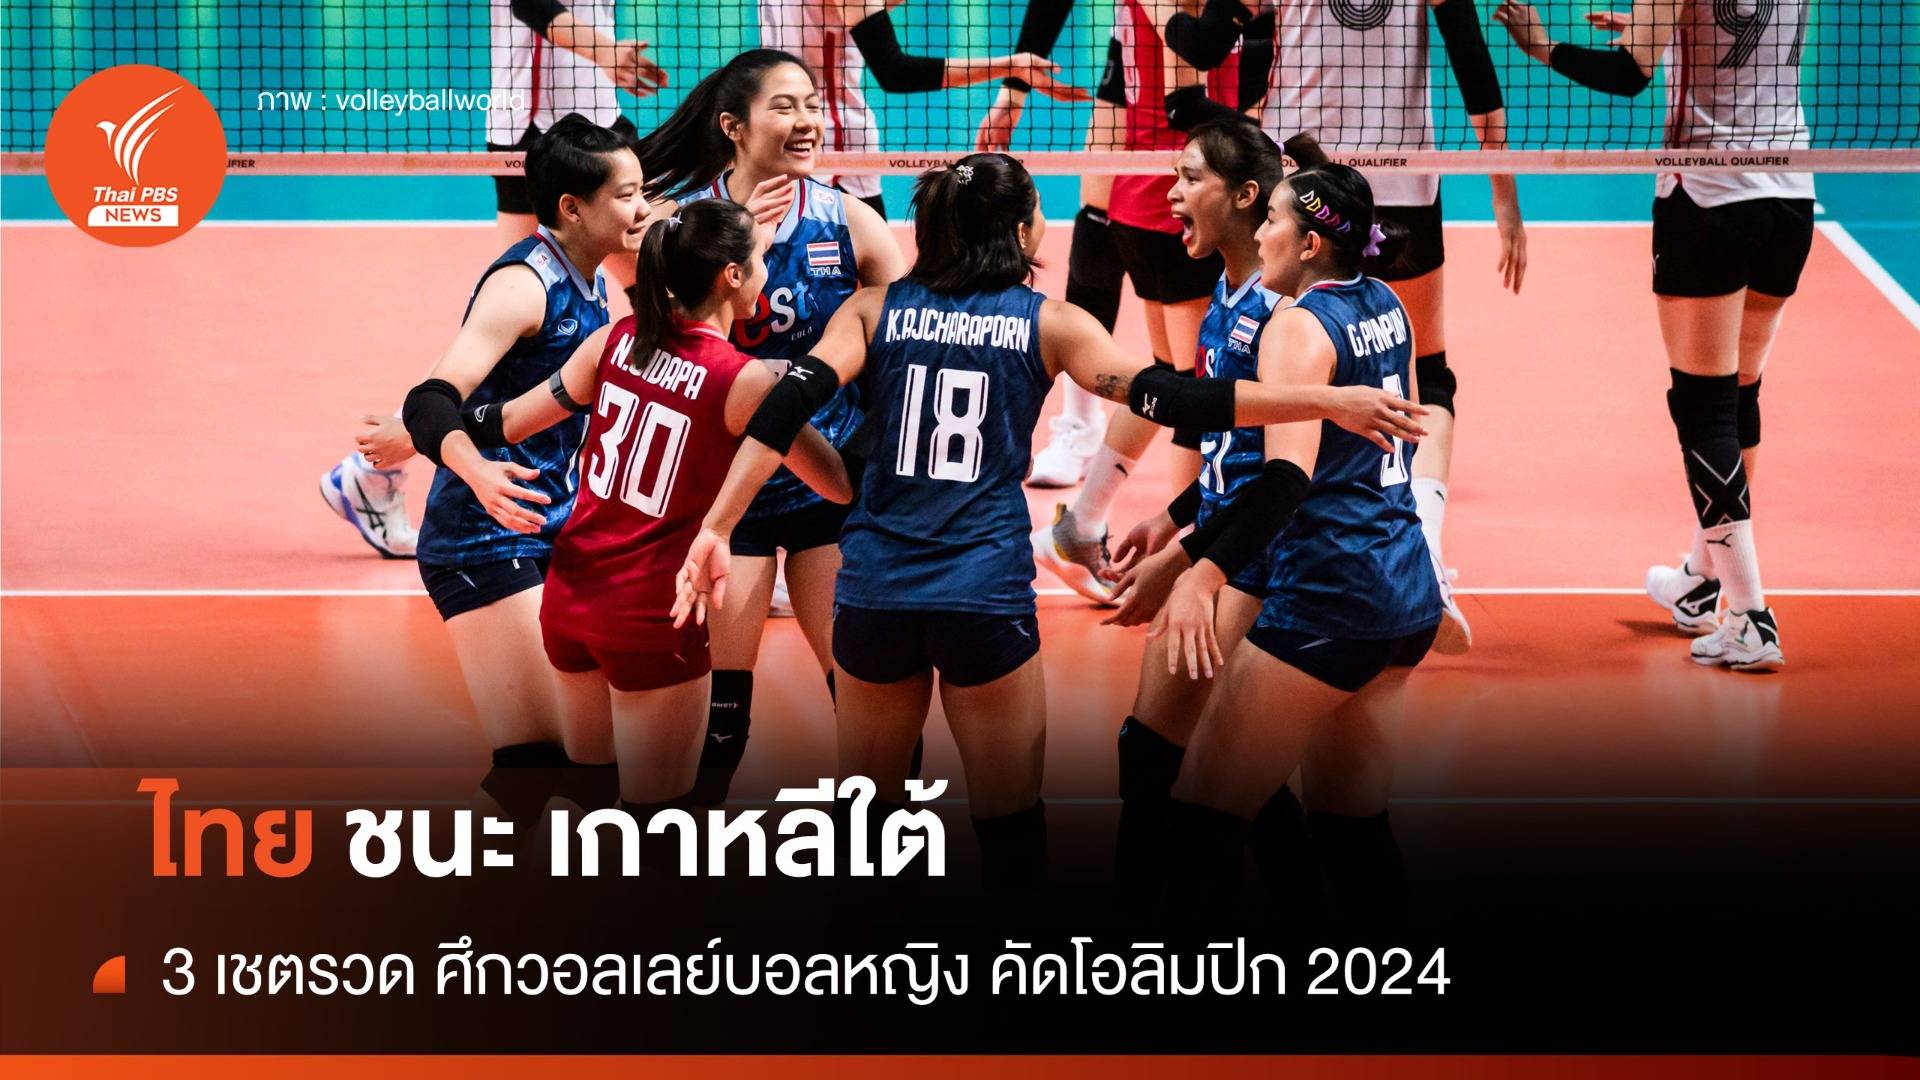 ไทย ชนะ เกาหลีใต้ 3 เซตรวด ศึกวอลเลย์บอลหญิงคัดโอลิมปิก 2024